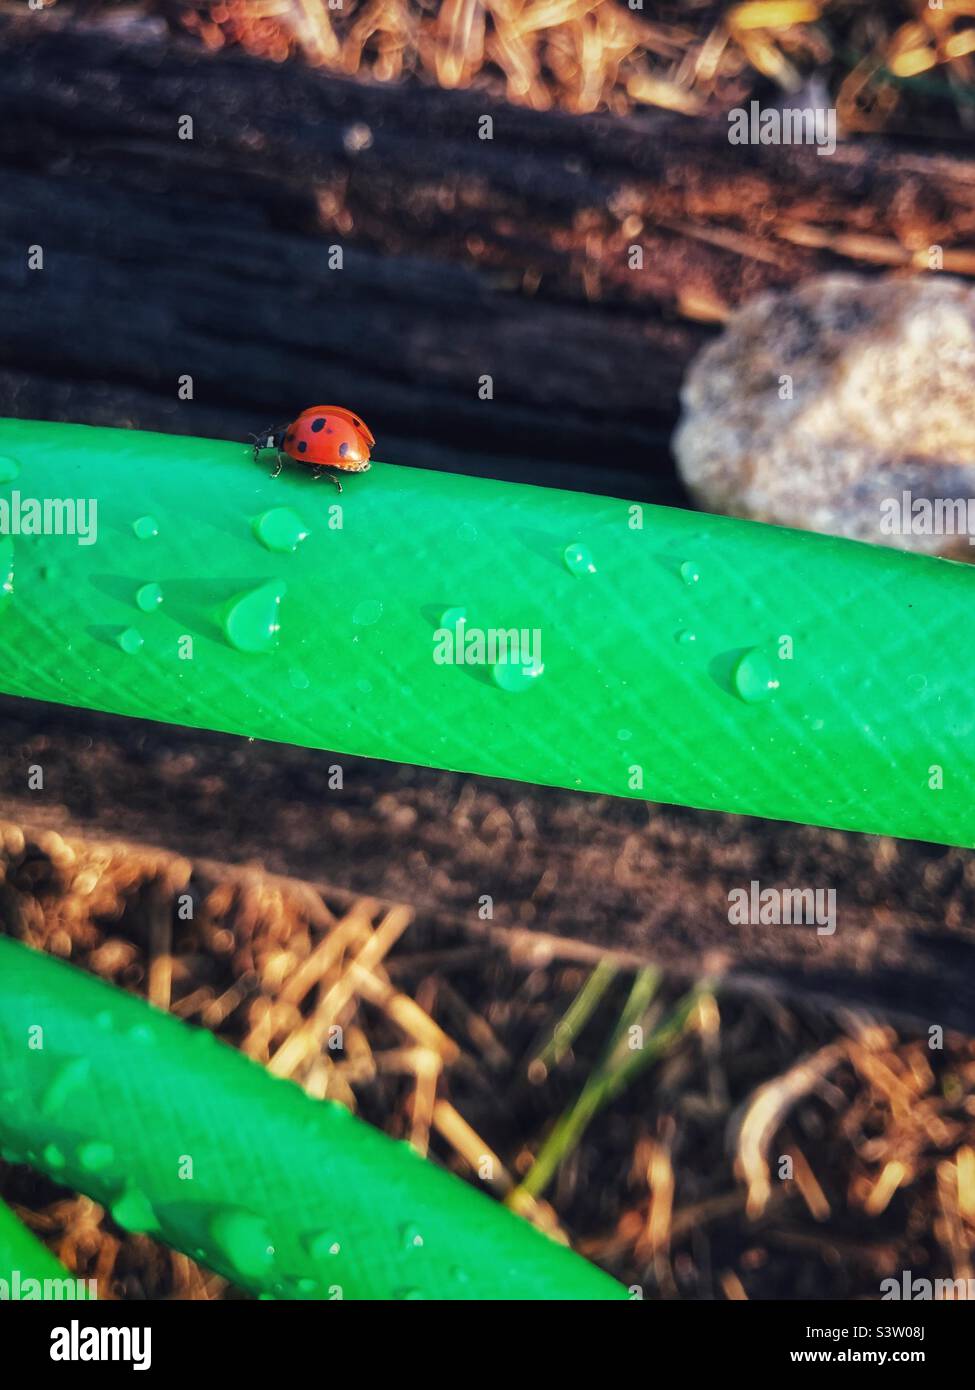 Ladybug on the garden hose Stock Photo